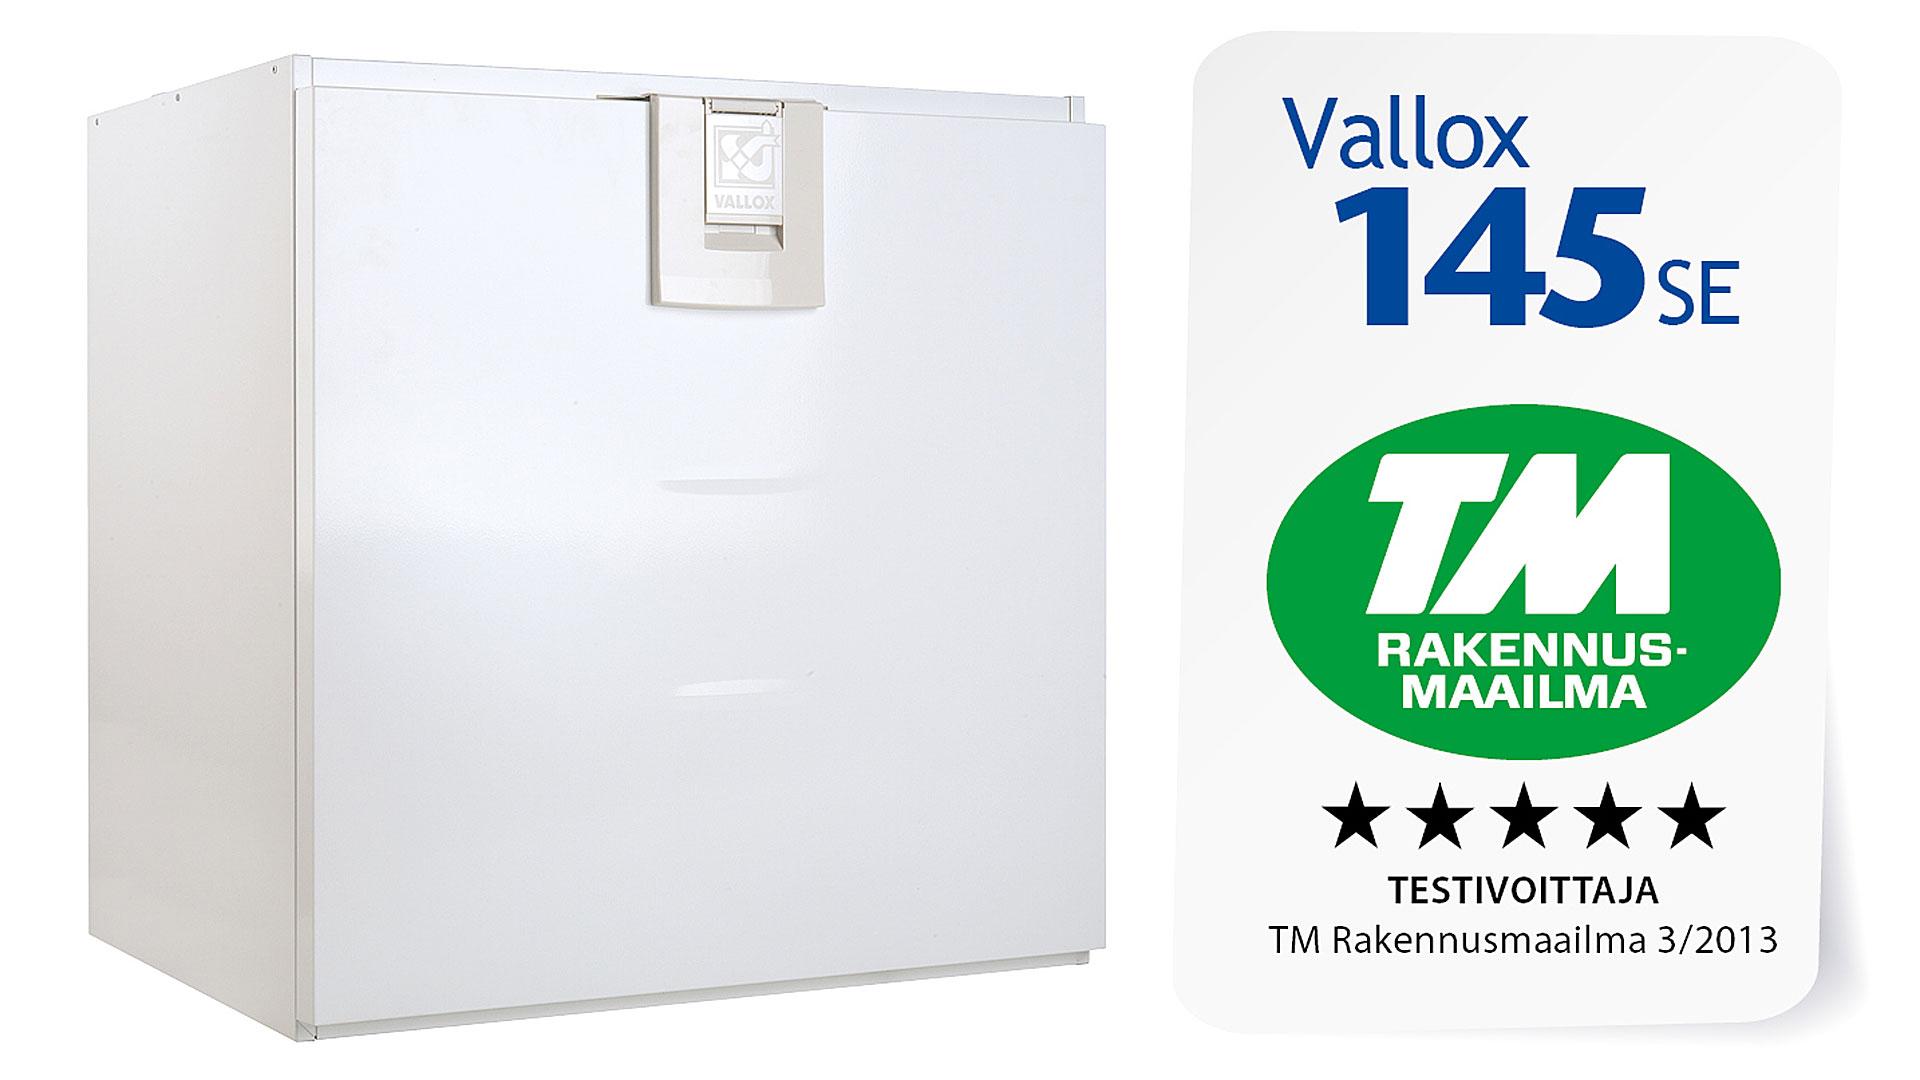 Vallox 145 SE -ilmanvaihtokone on TM rakennusmaailman testivoittaja ja sai VTT:ltä A+ luokan sertifikaatin.